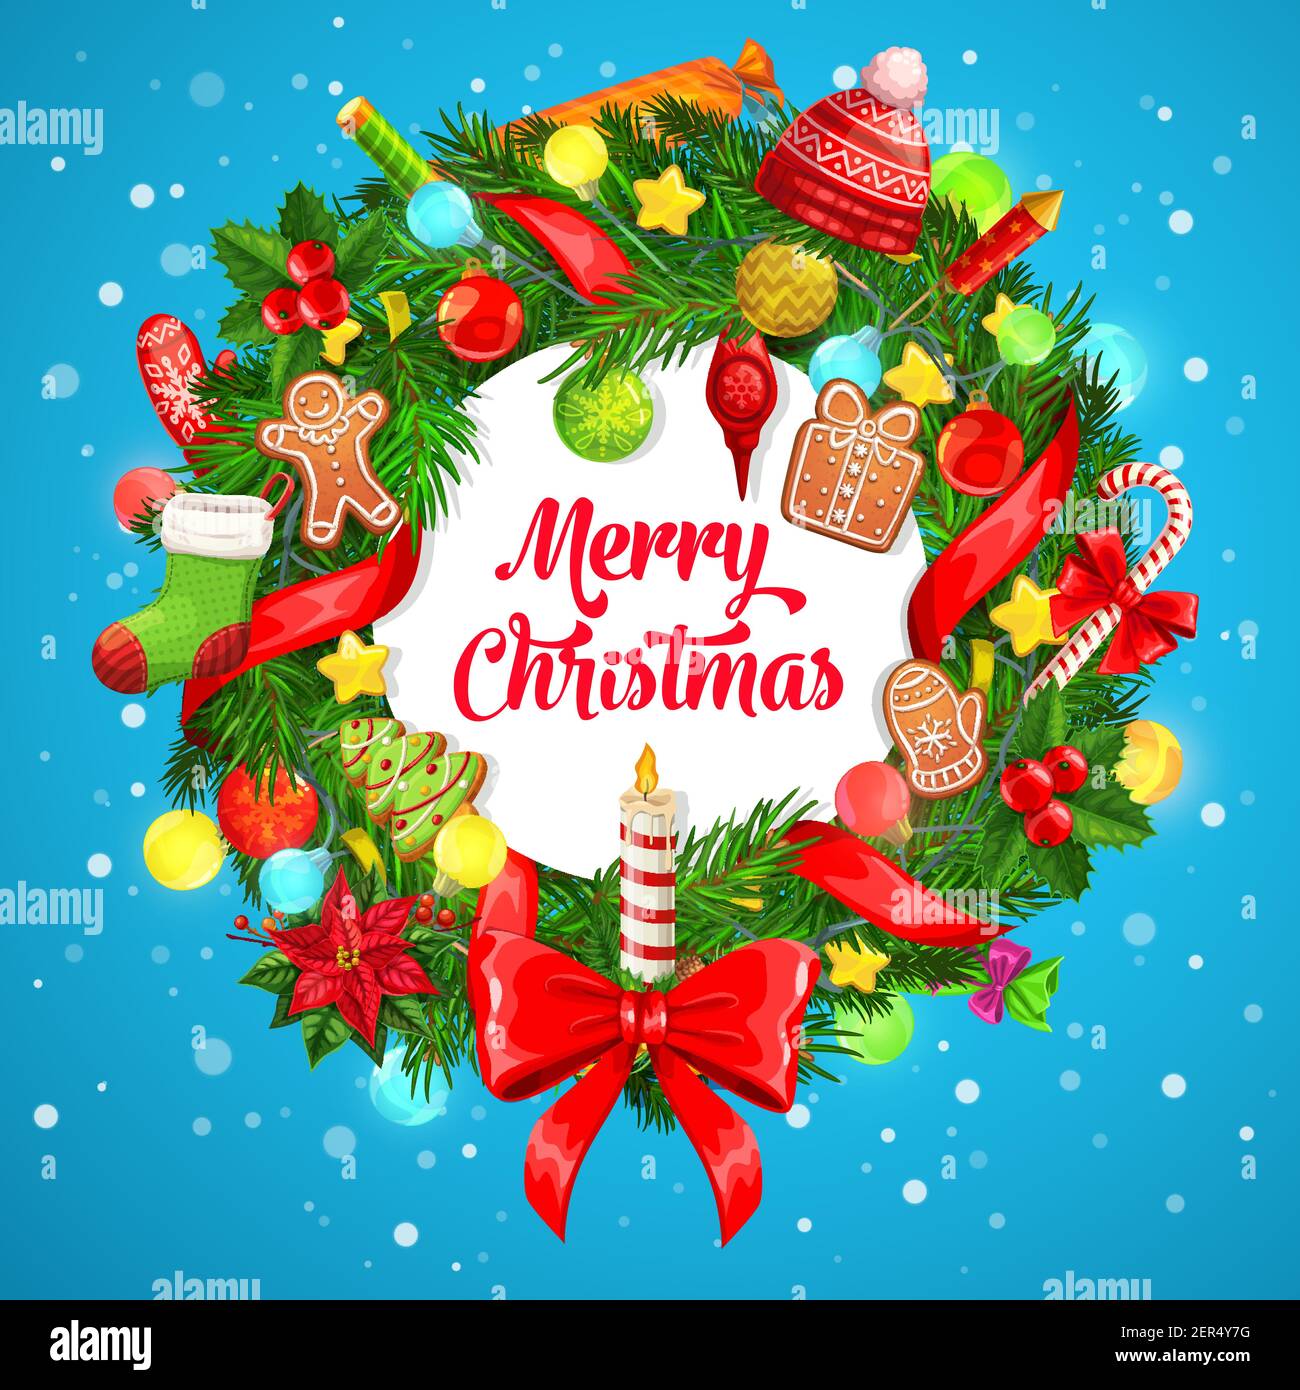 Weihnachtsbaum, Holly Beere und Weihnachten Geschenke Kranz Vektor Grußkarte. Winterurlaub Geschenke, Schnee und Sterne, rote Bänder, Strumpfsocke und candie Stock Vektor